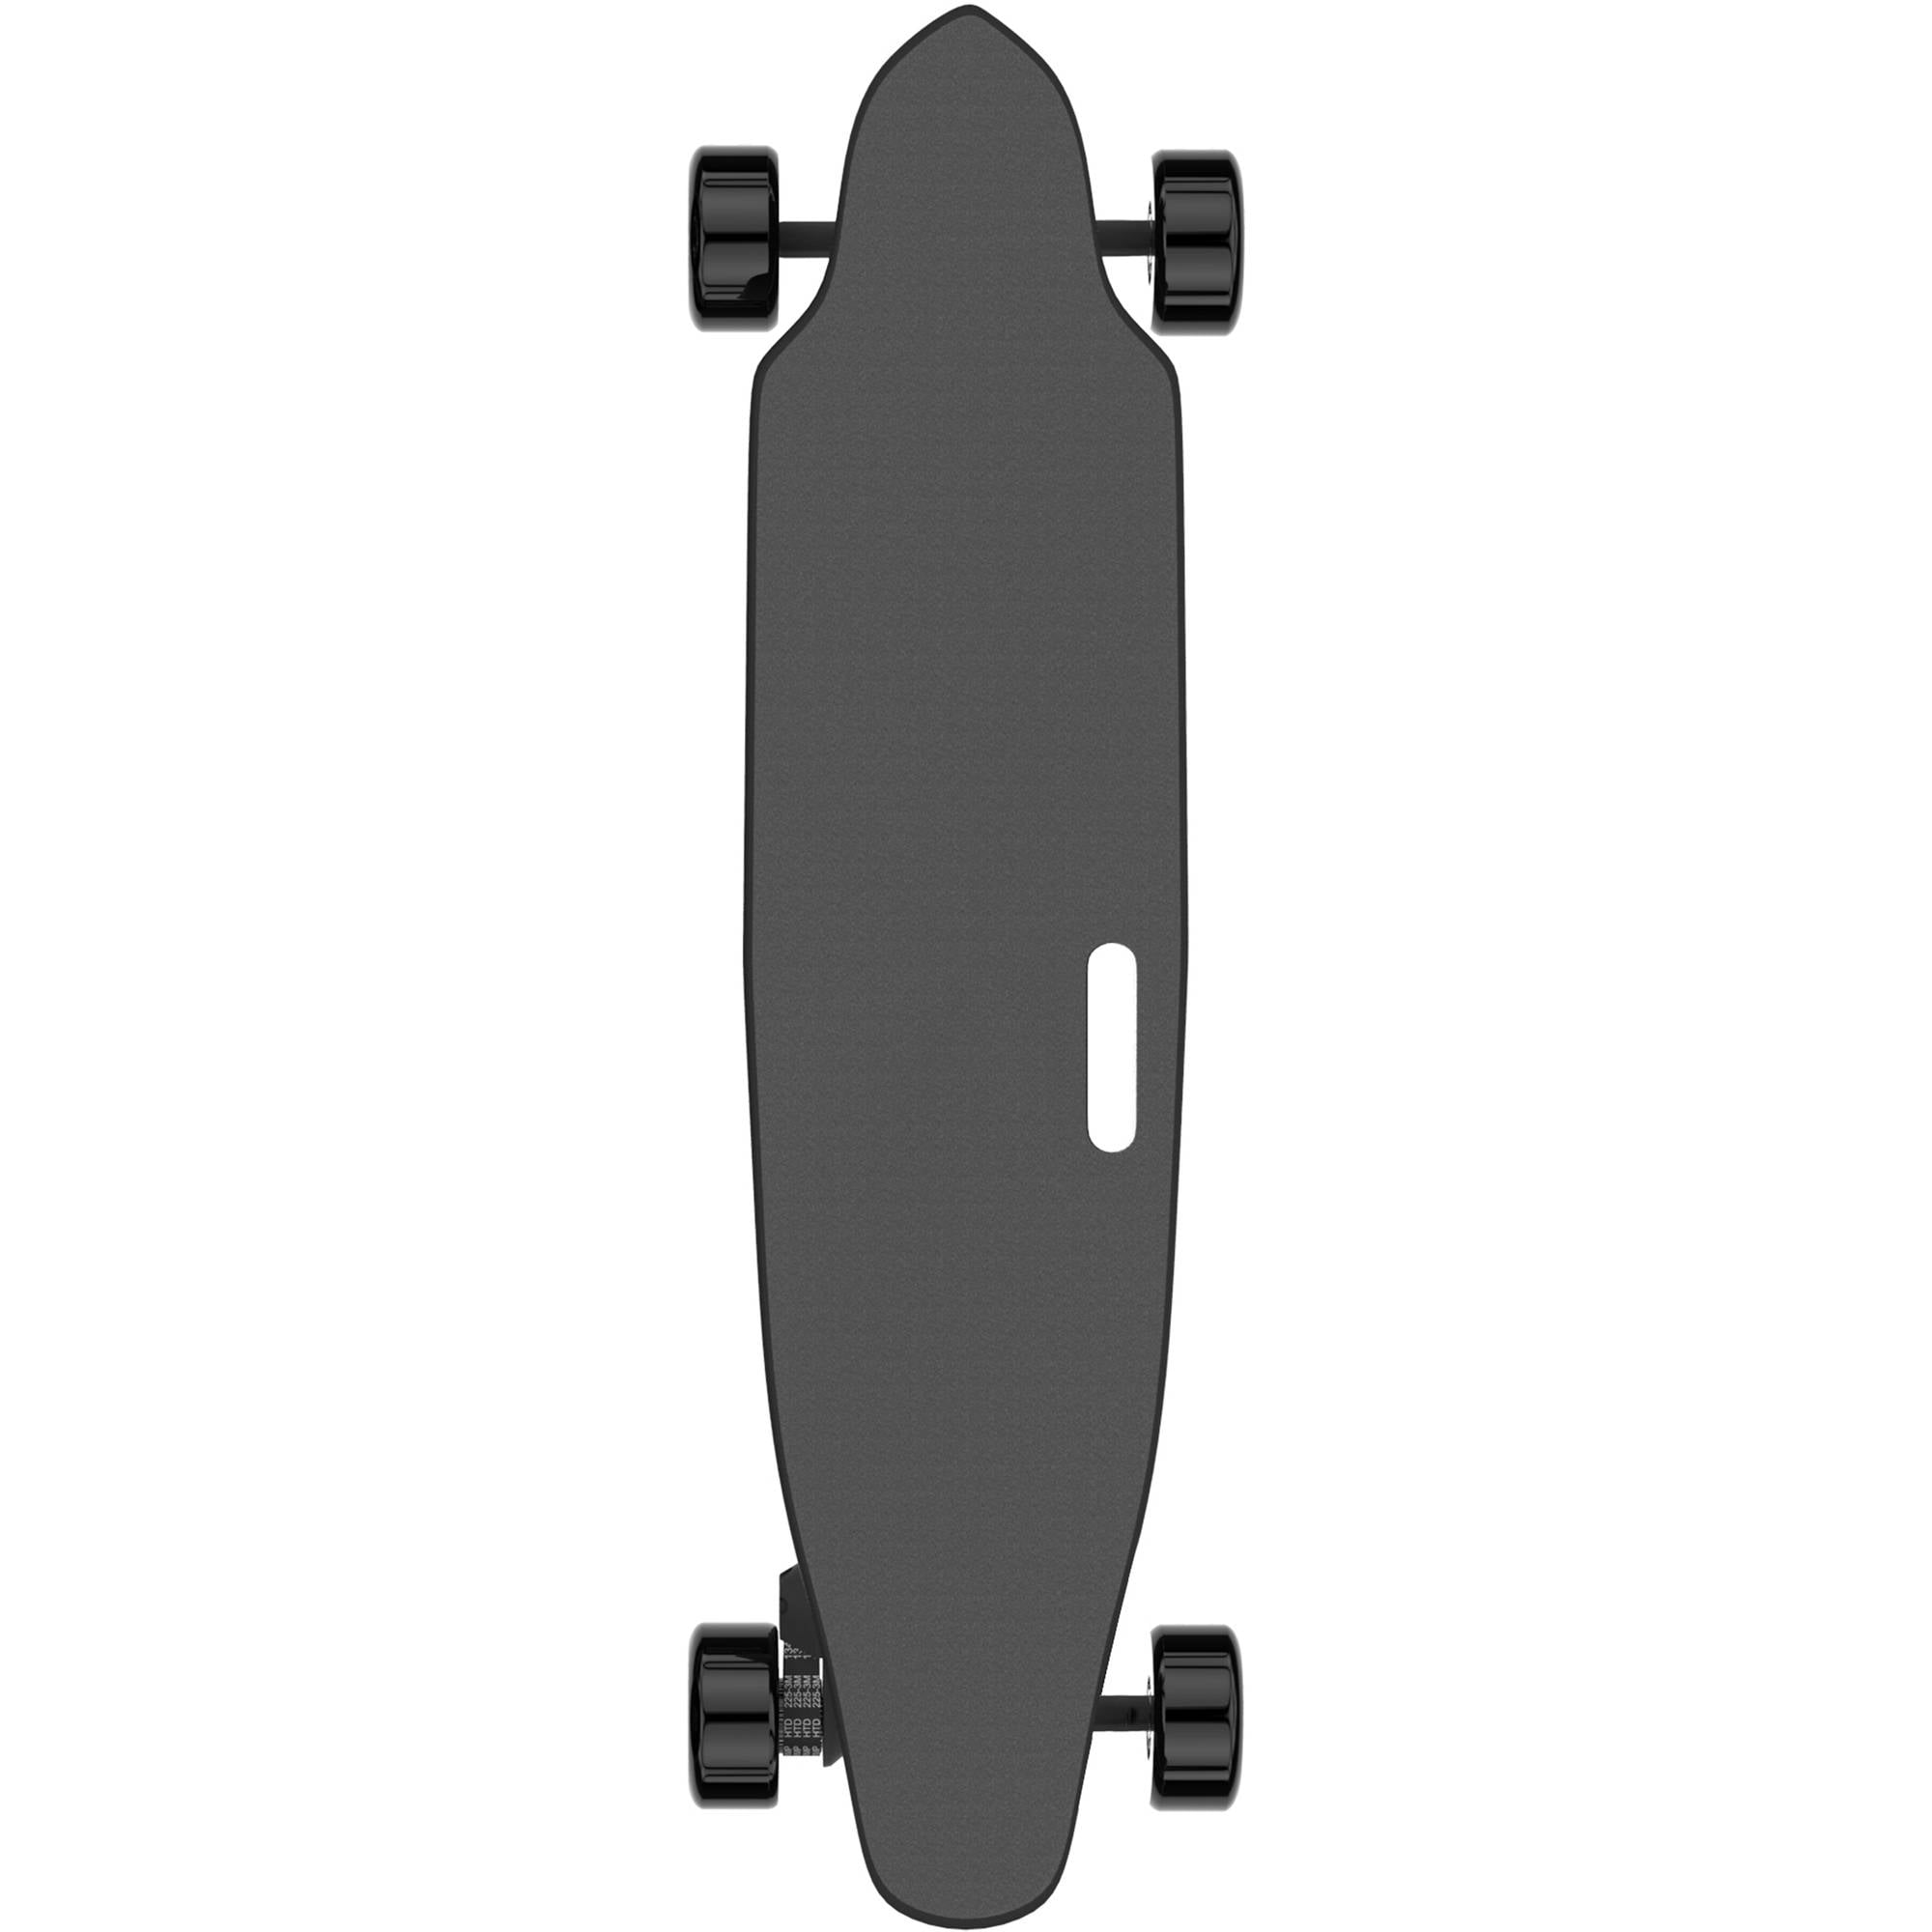 New LIFTBOARD Electric Skateboard 900W Single Motor Longboard Surf Skate Board 